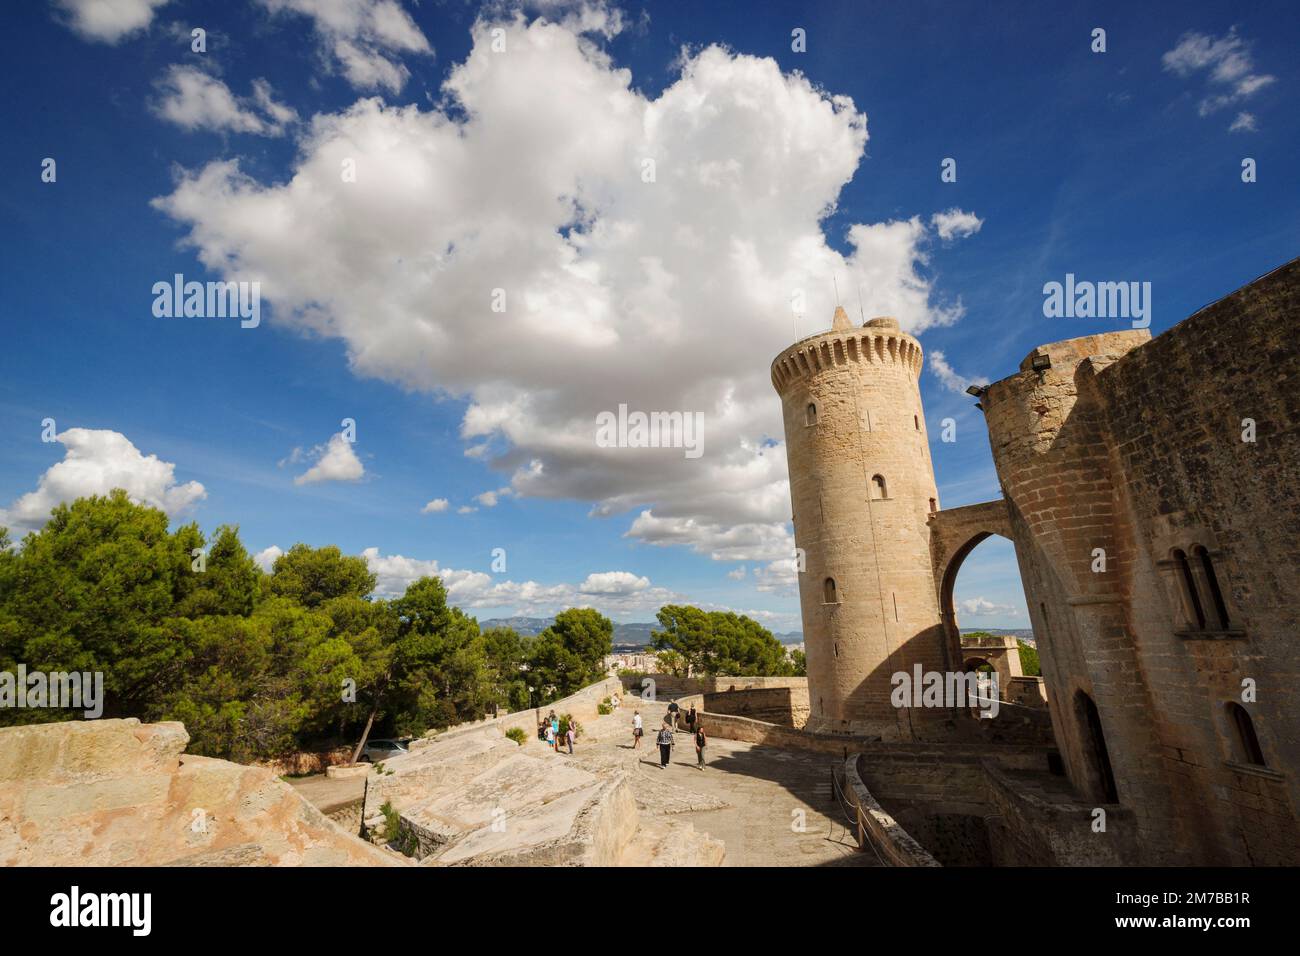 Castillo de Bellver -siglo.XIV-, Palma de mallorca. Mallorca. Islas Baleares. España. Stock Photo